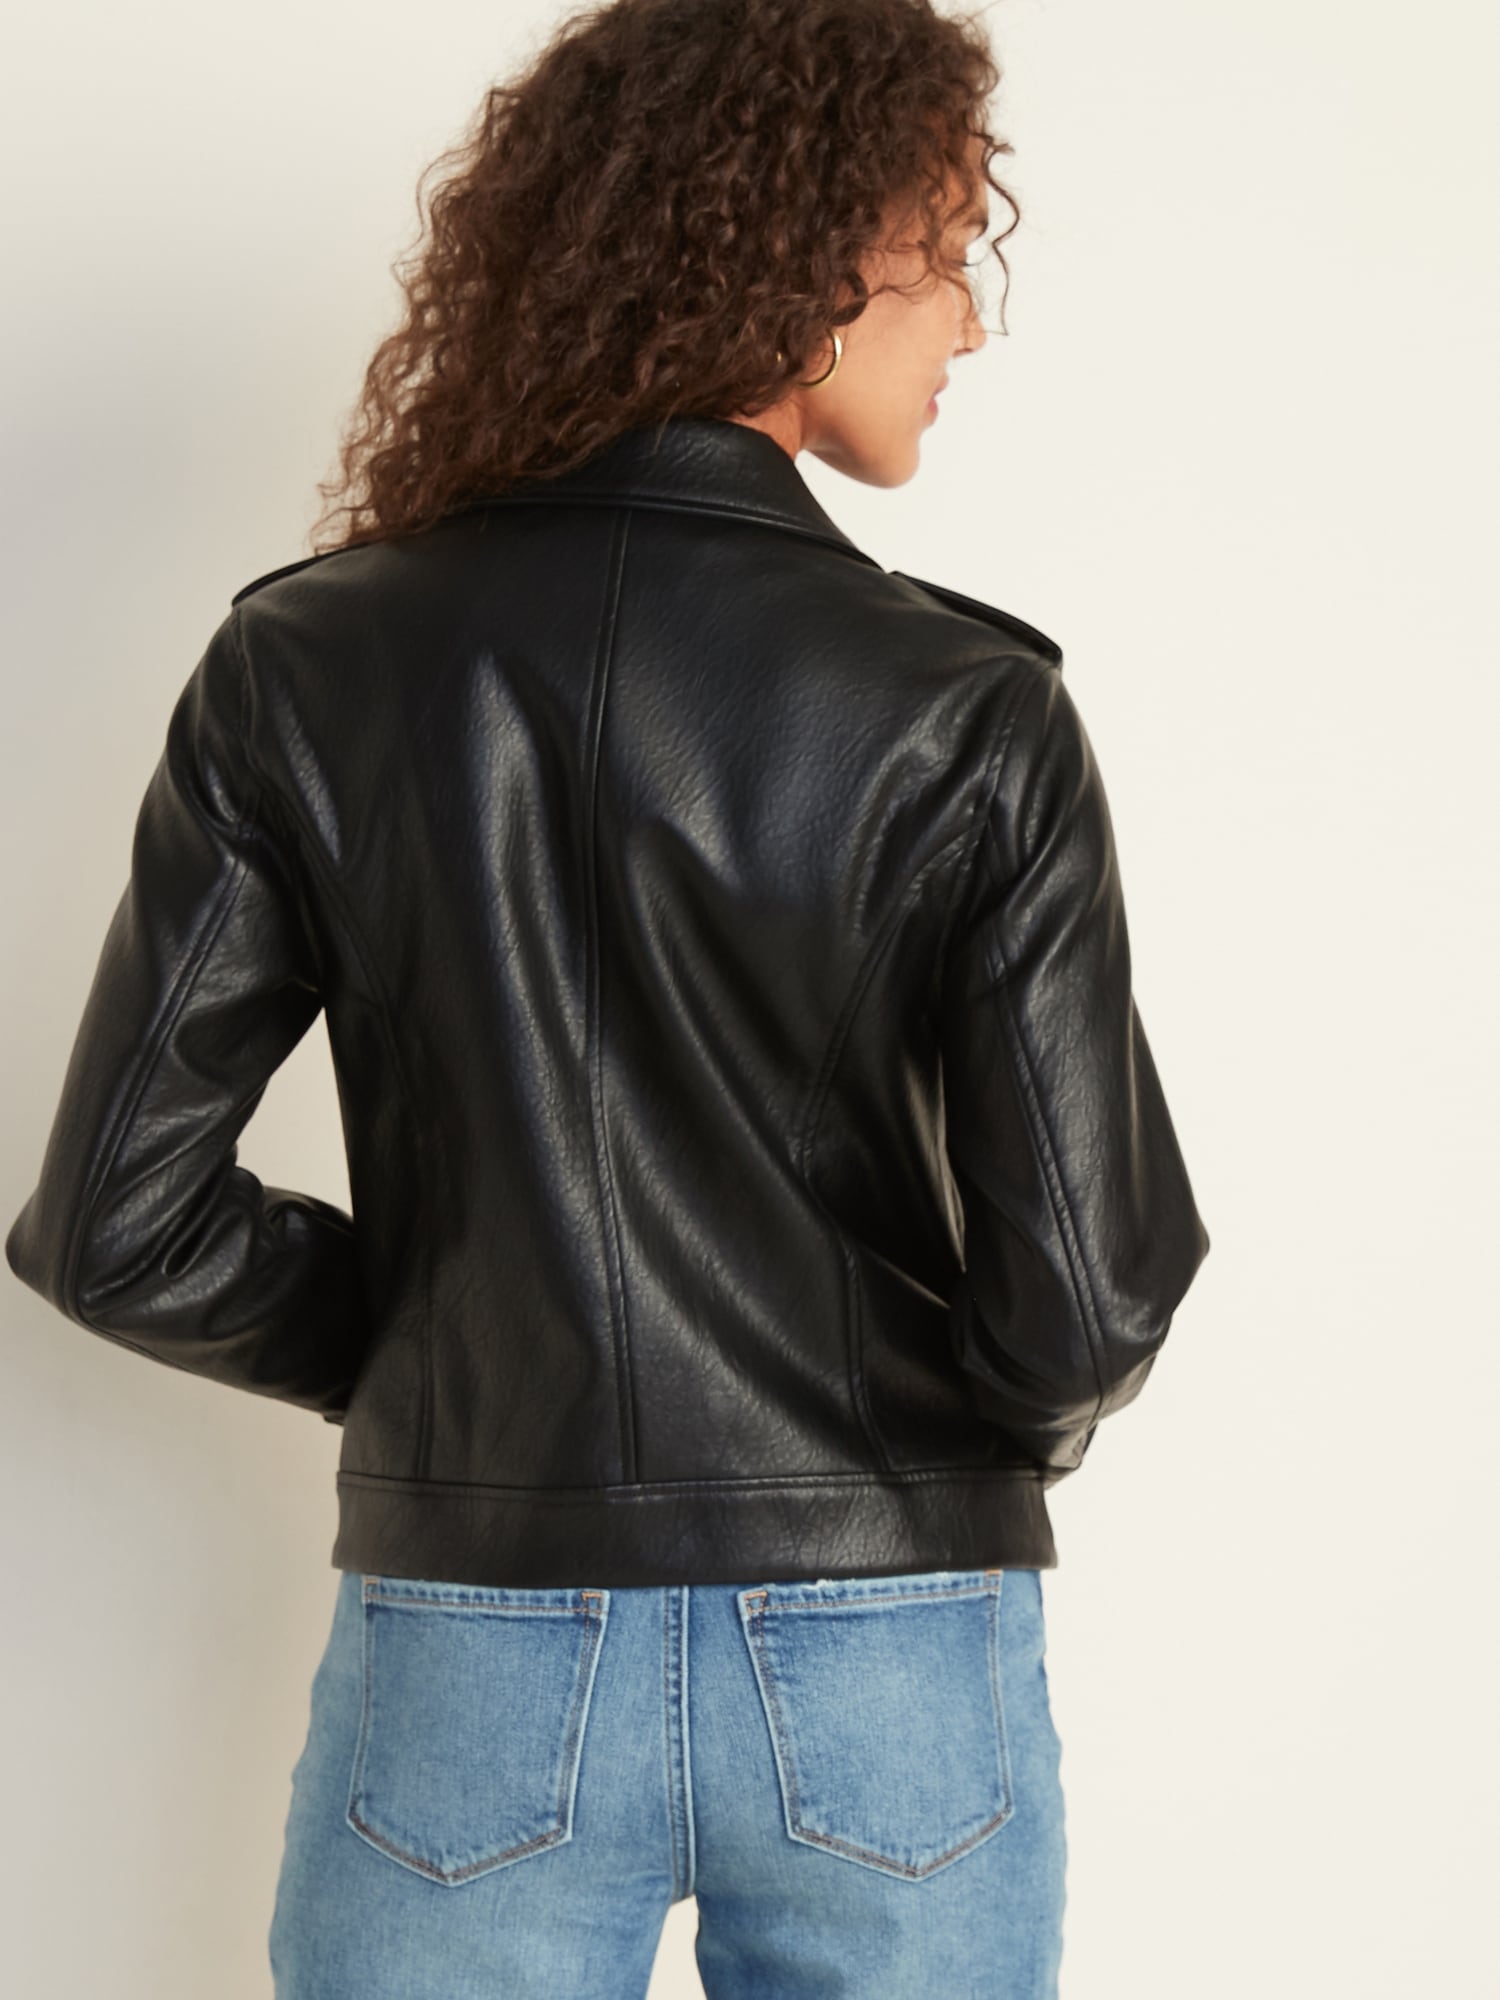 gap black leather jacket